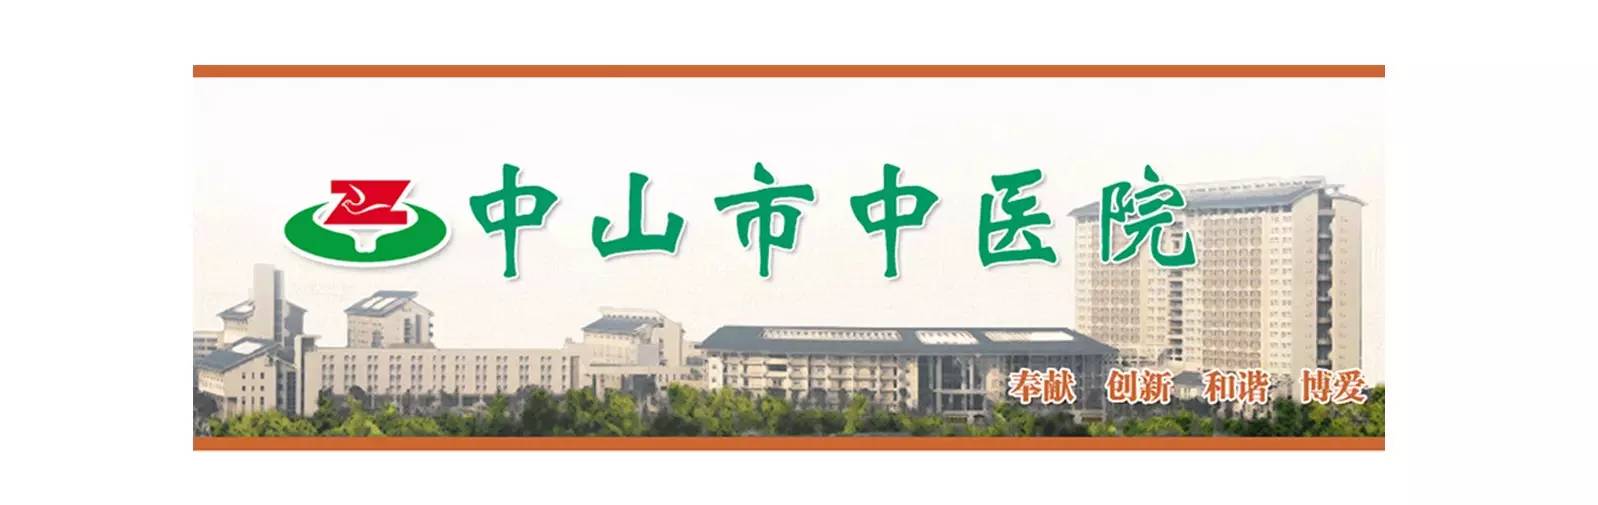 揽世案例丨广东省中山市中医院(图1)